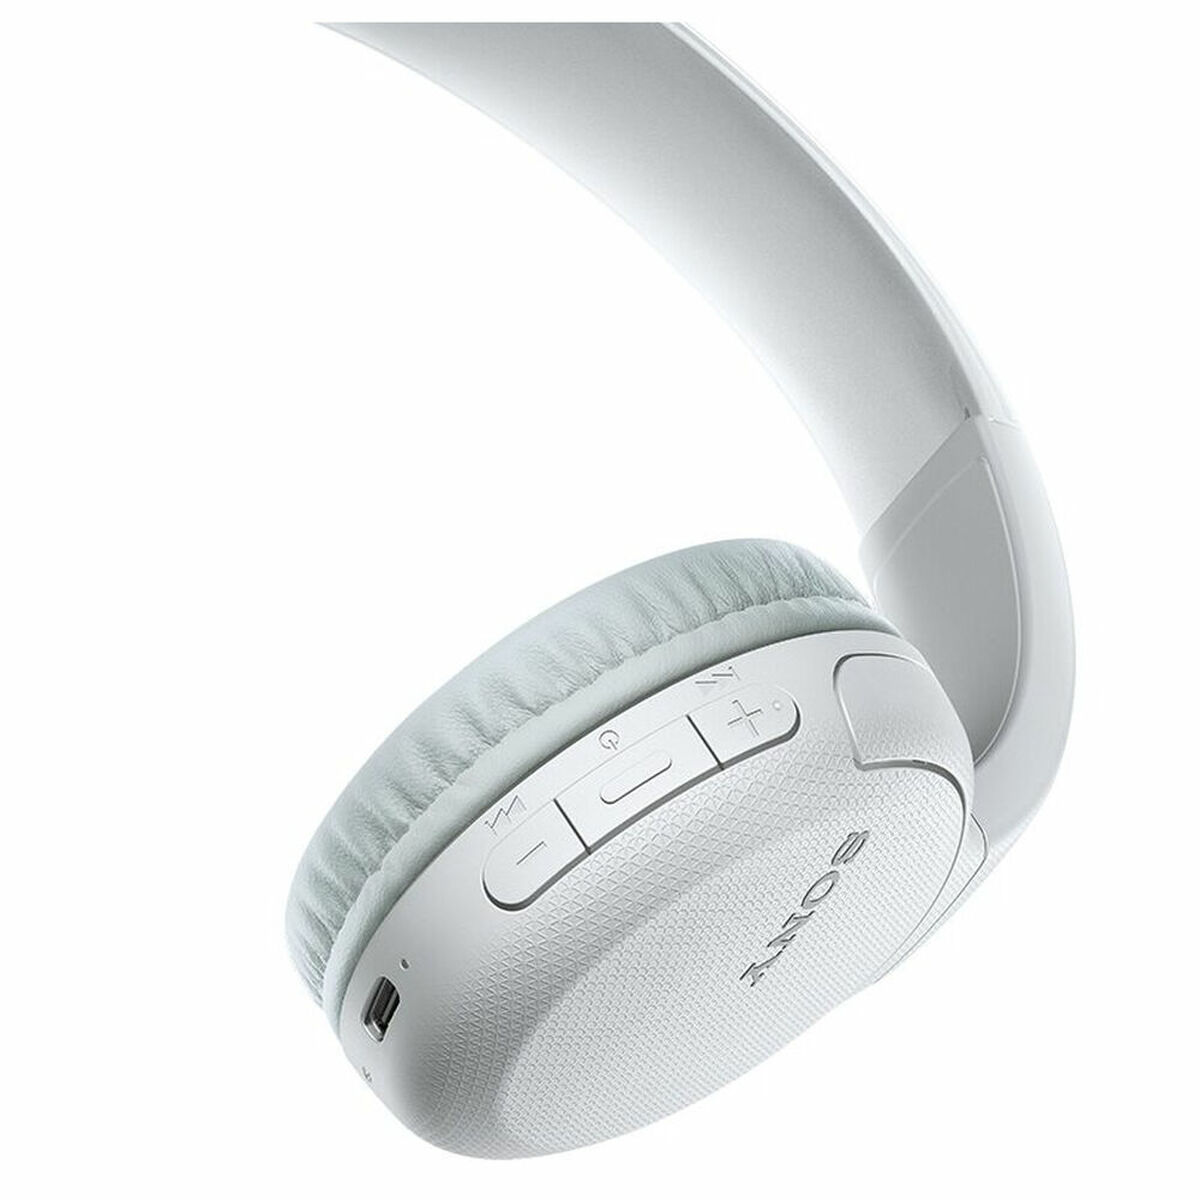 SONY WH-CH510, Kopfhörer weiß Bluetooth On-ear